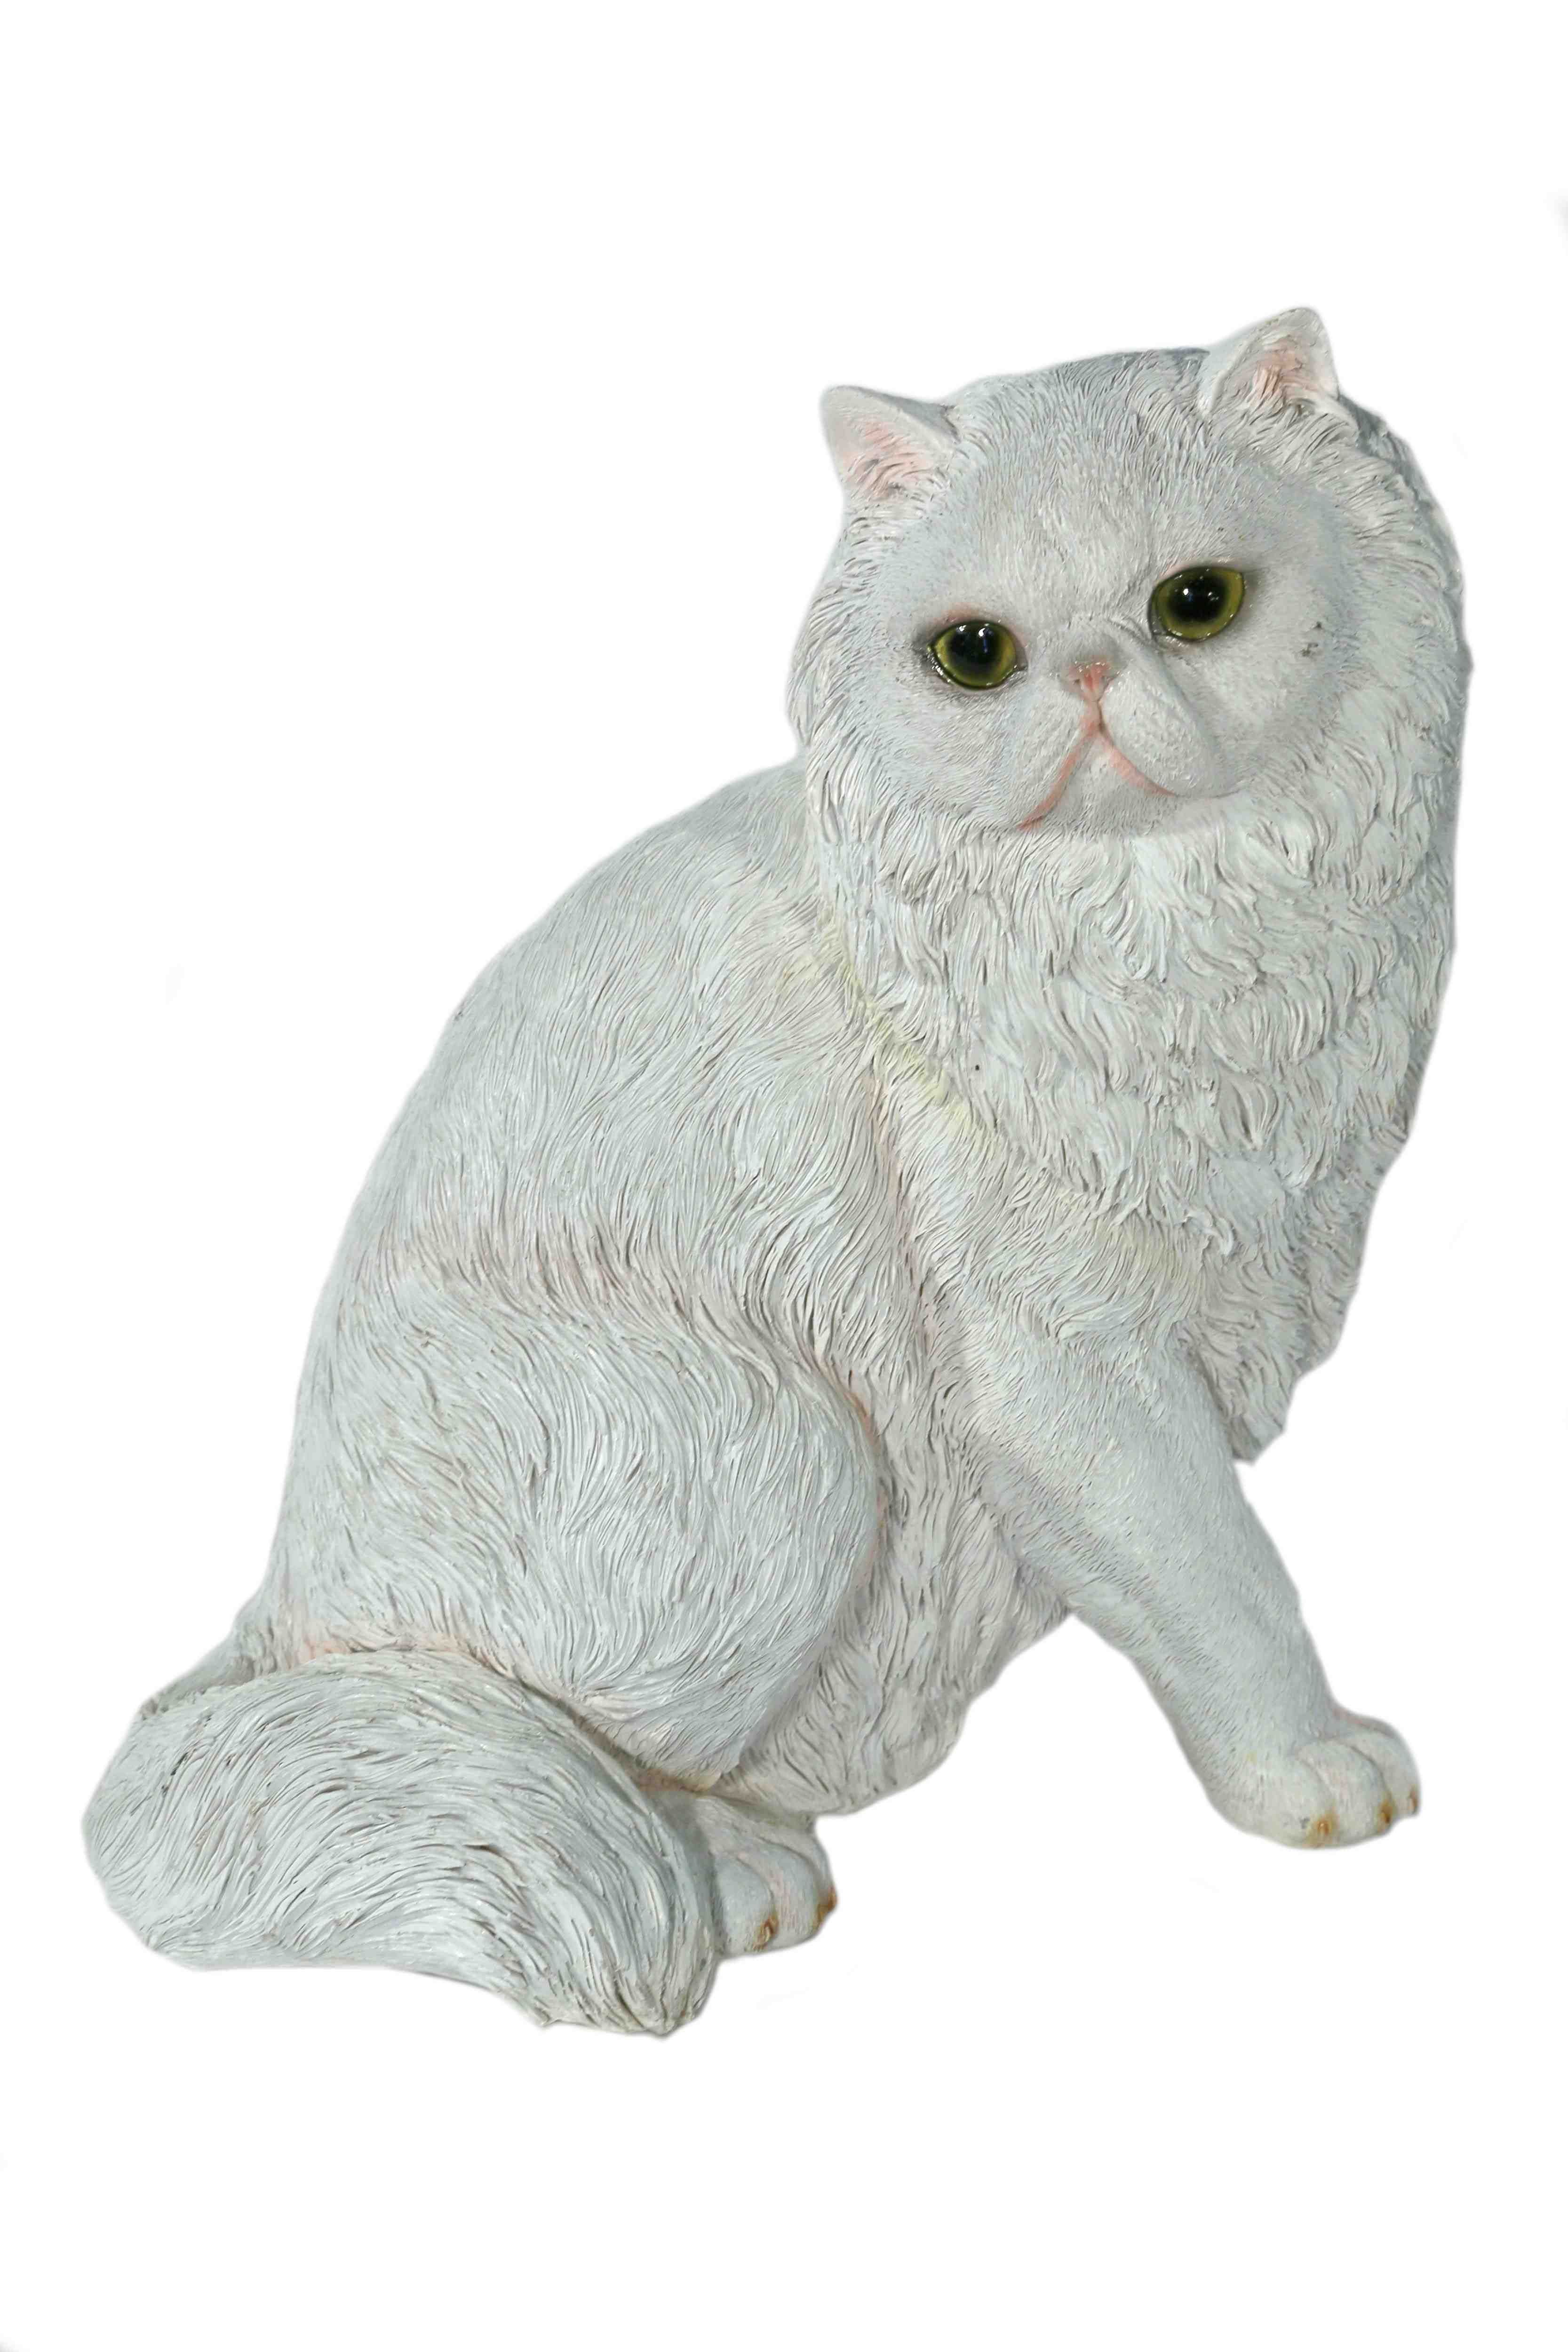 Casa Collection by Jänig Tierfigur Katze aus Katze, weiß, Polyresin Tierfigur, Dekofigur